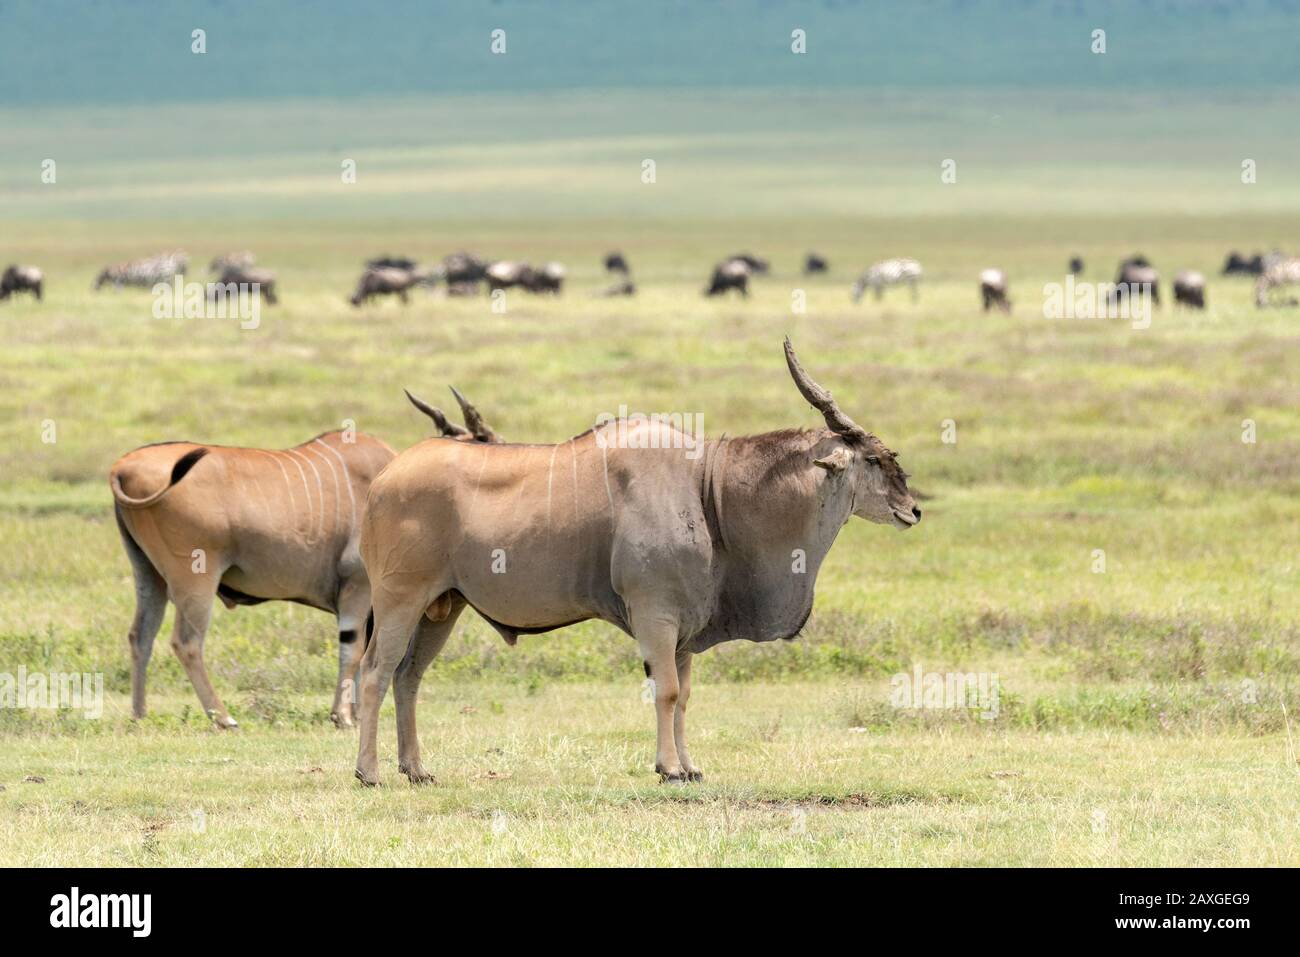 Eland antelope on the plains of the Ngorongoro crater Stock Photo